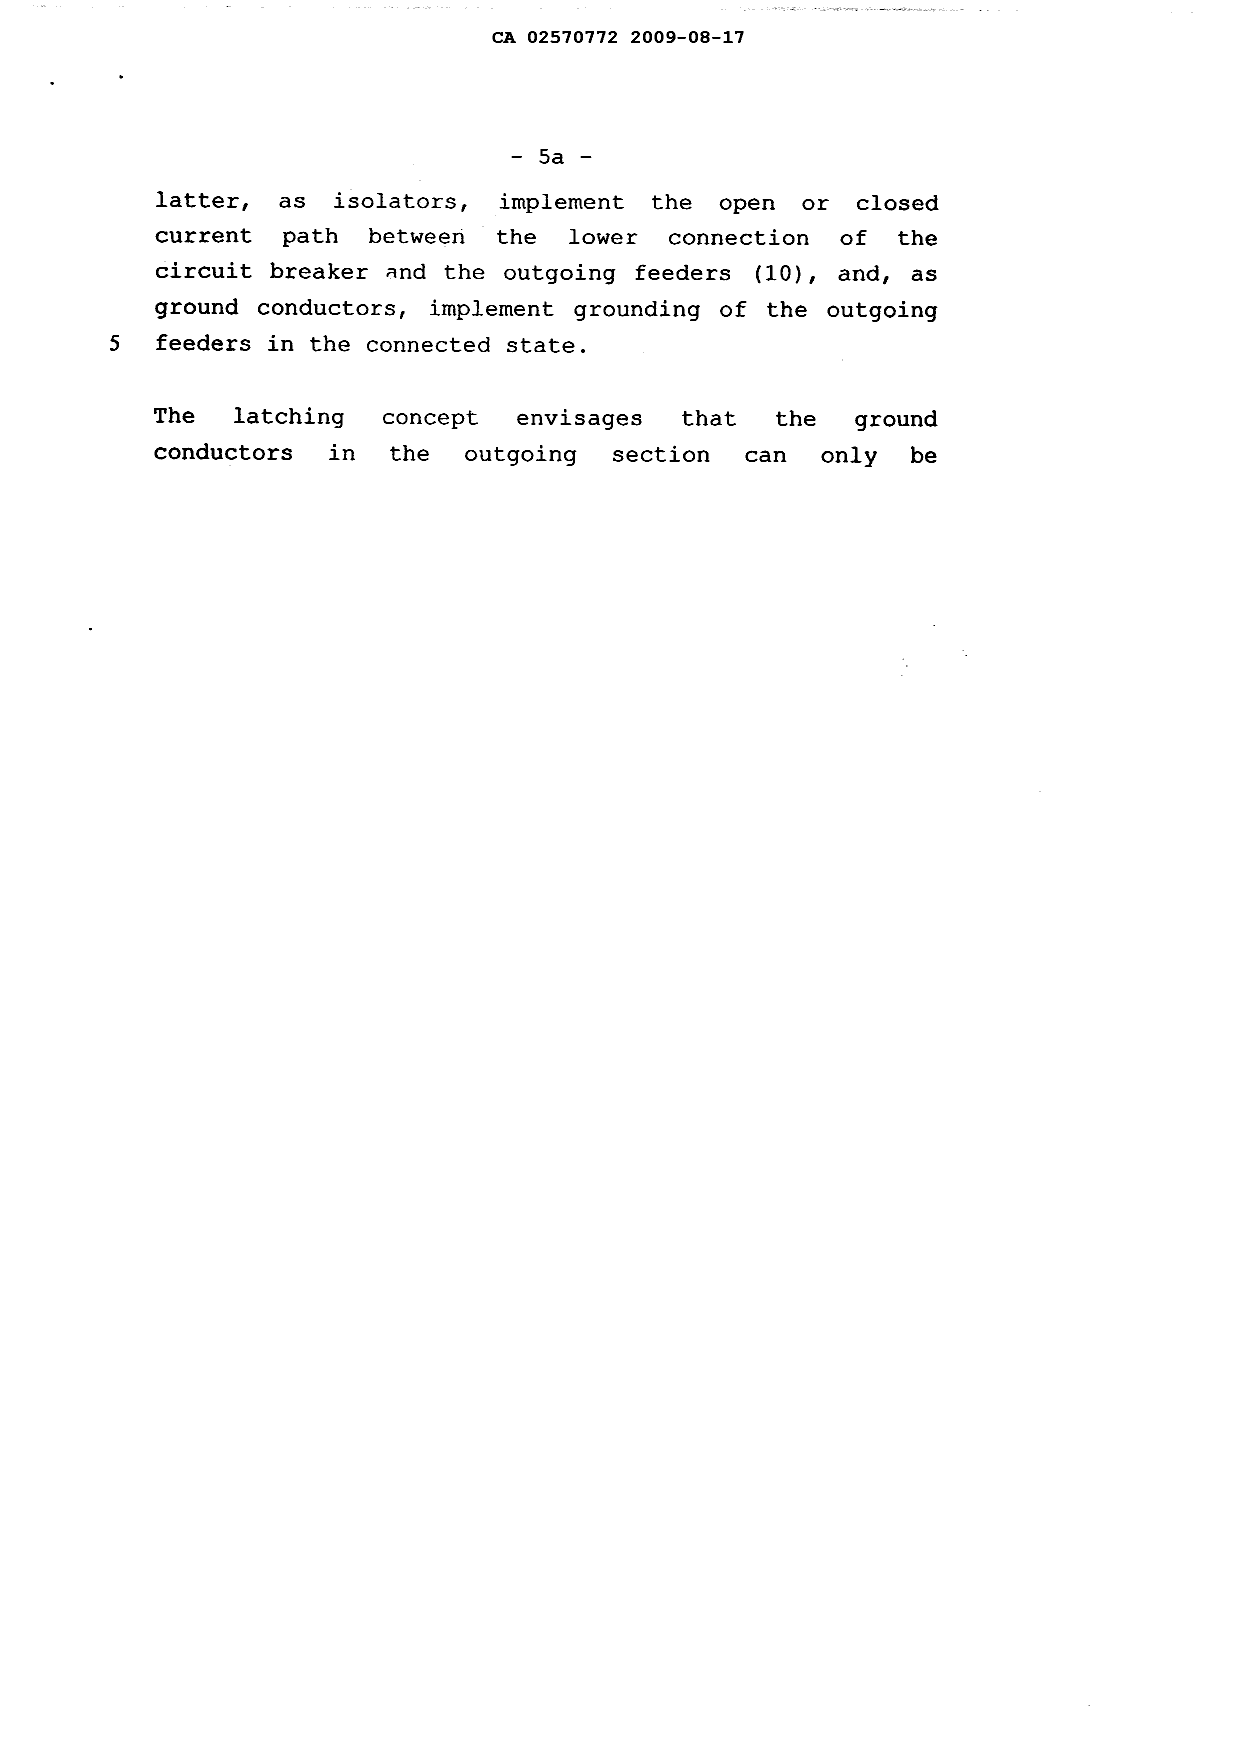 Canadian Patent Document 2570772. Description 20081217. Image 6 of 8